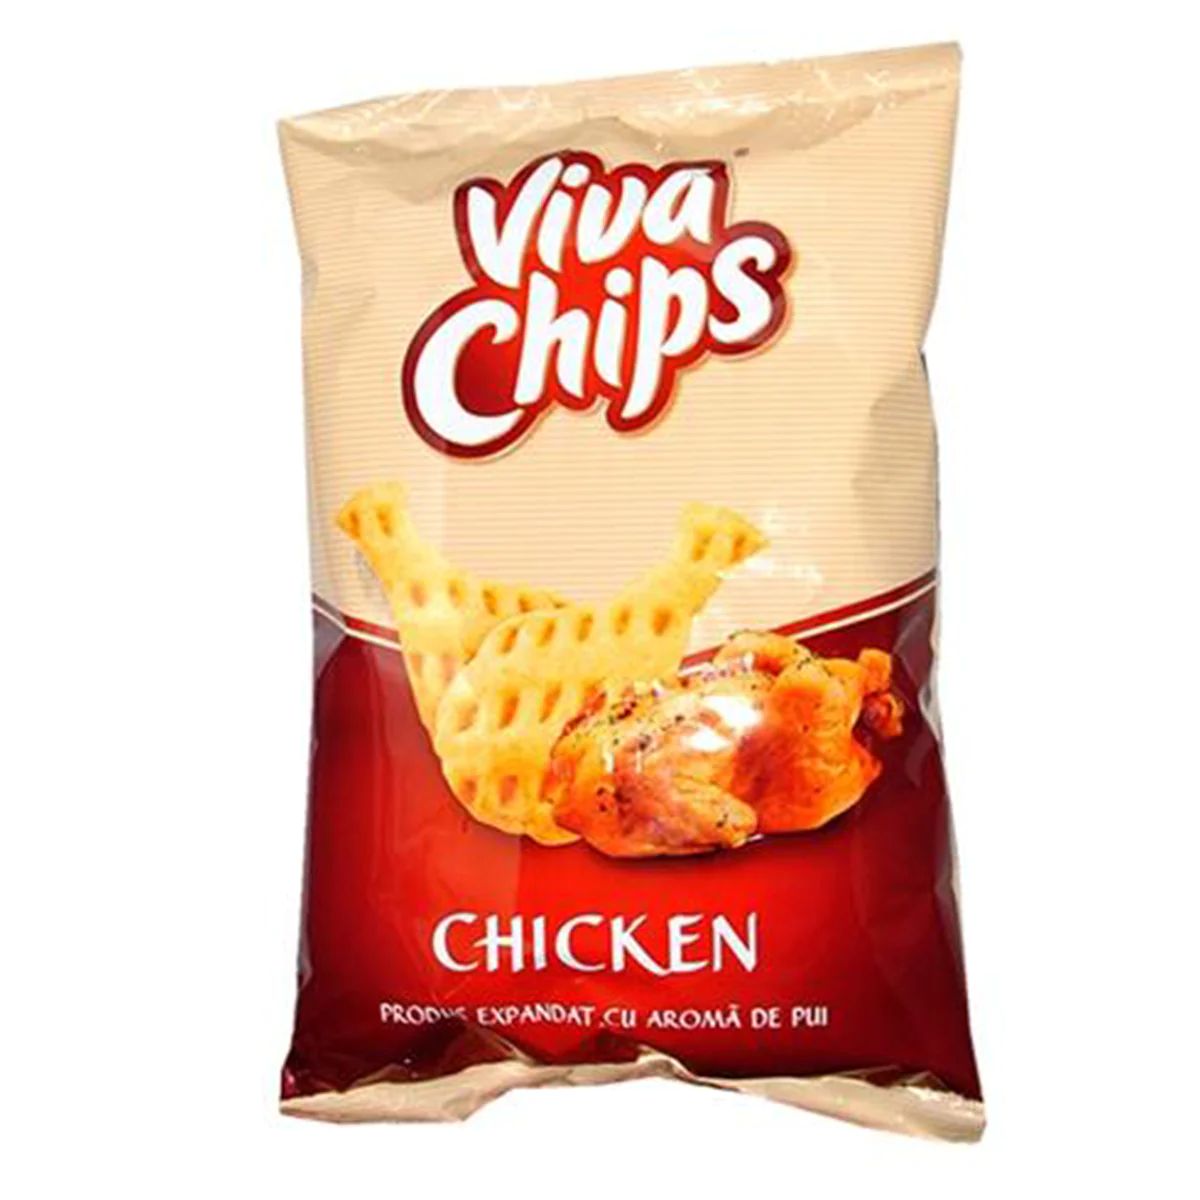 A bag of Viva Chips - Chicken Flavoured Crisps - 100g.